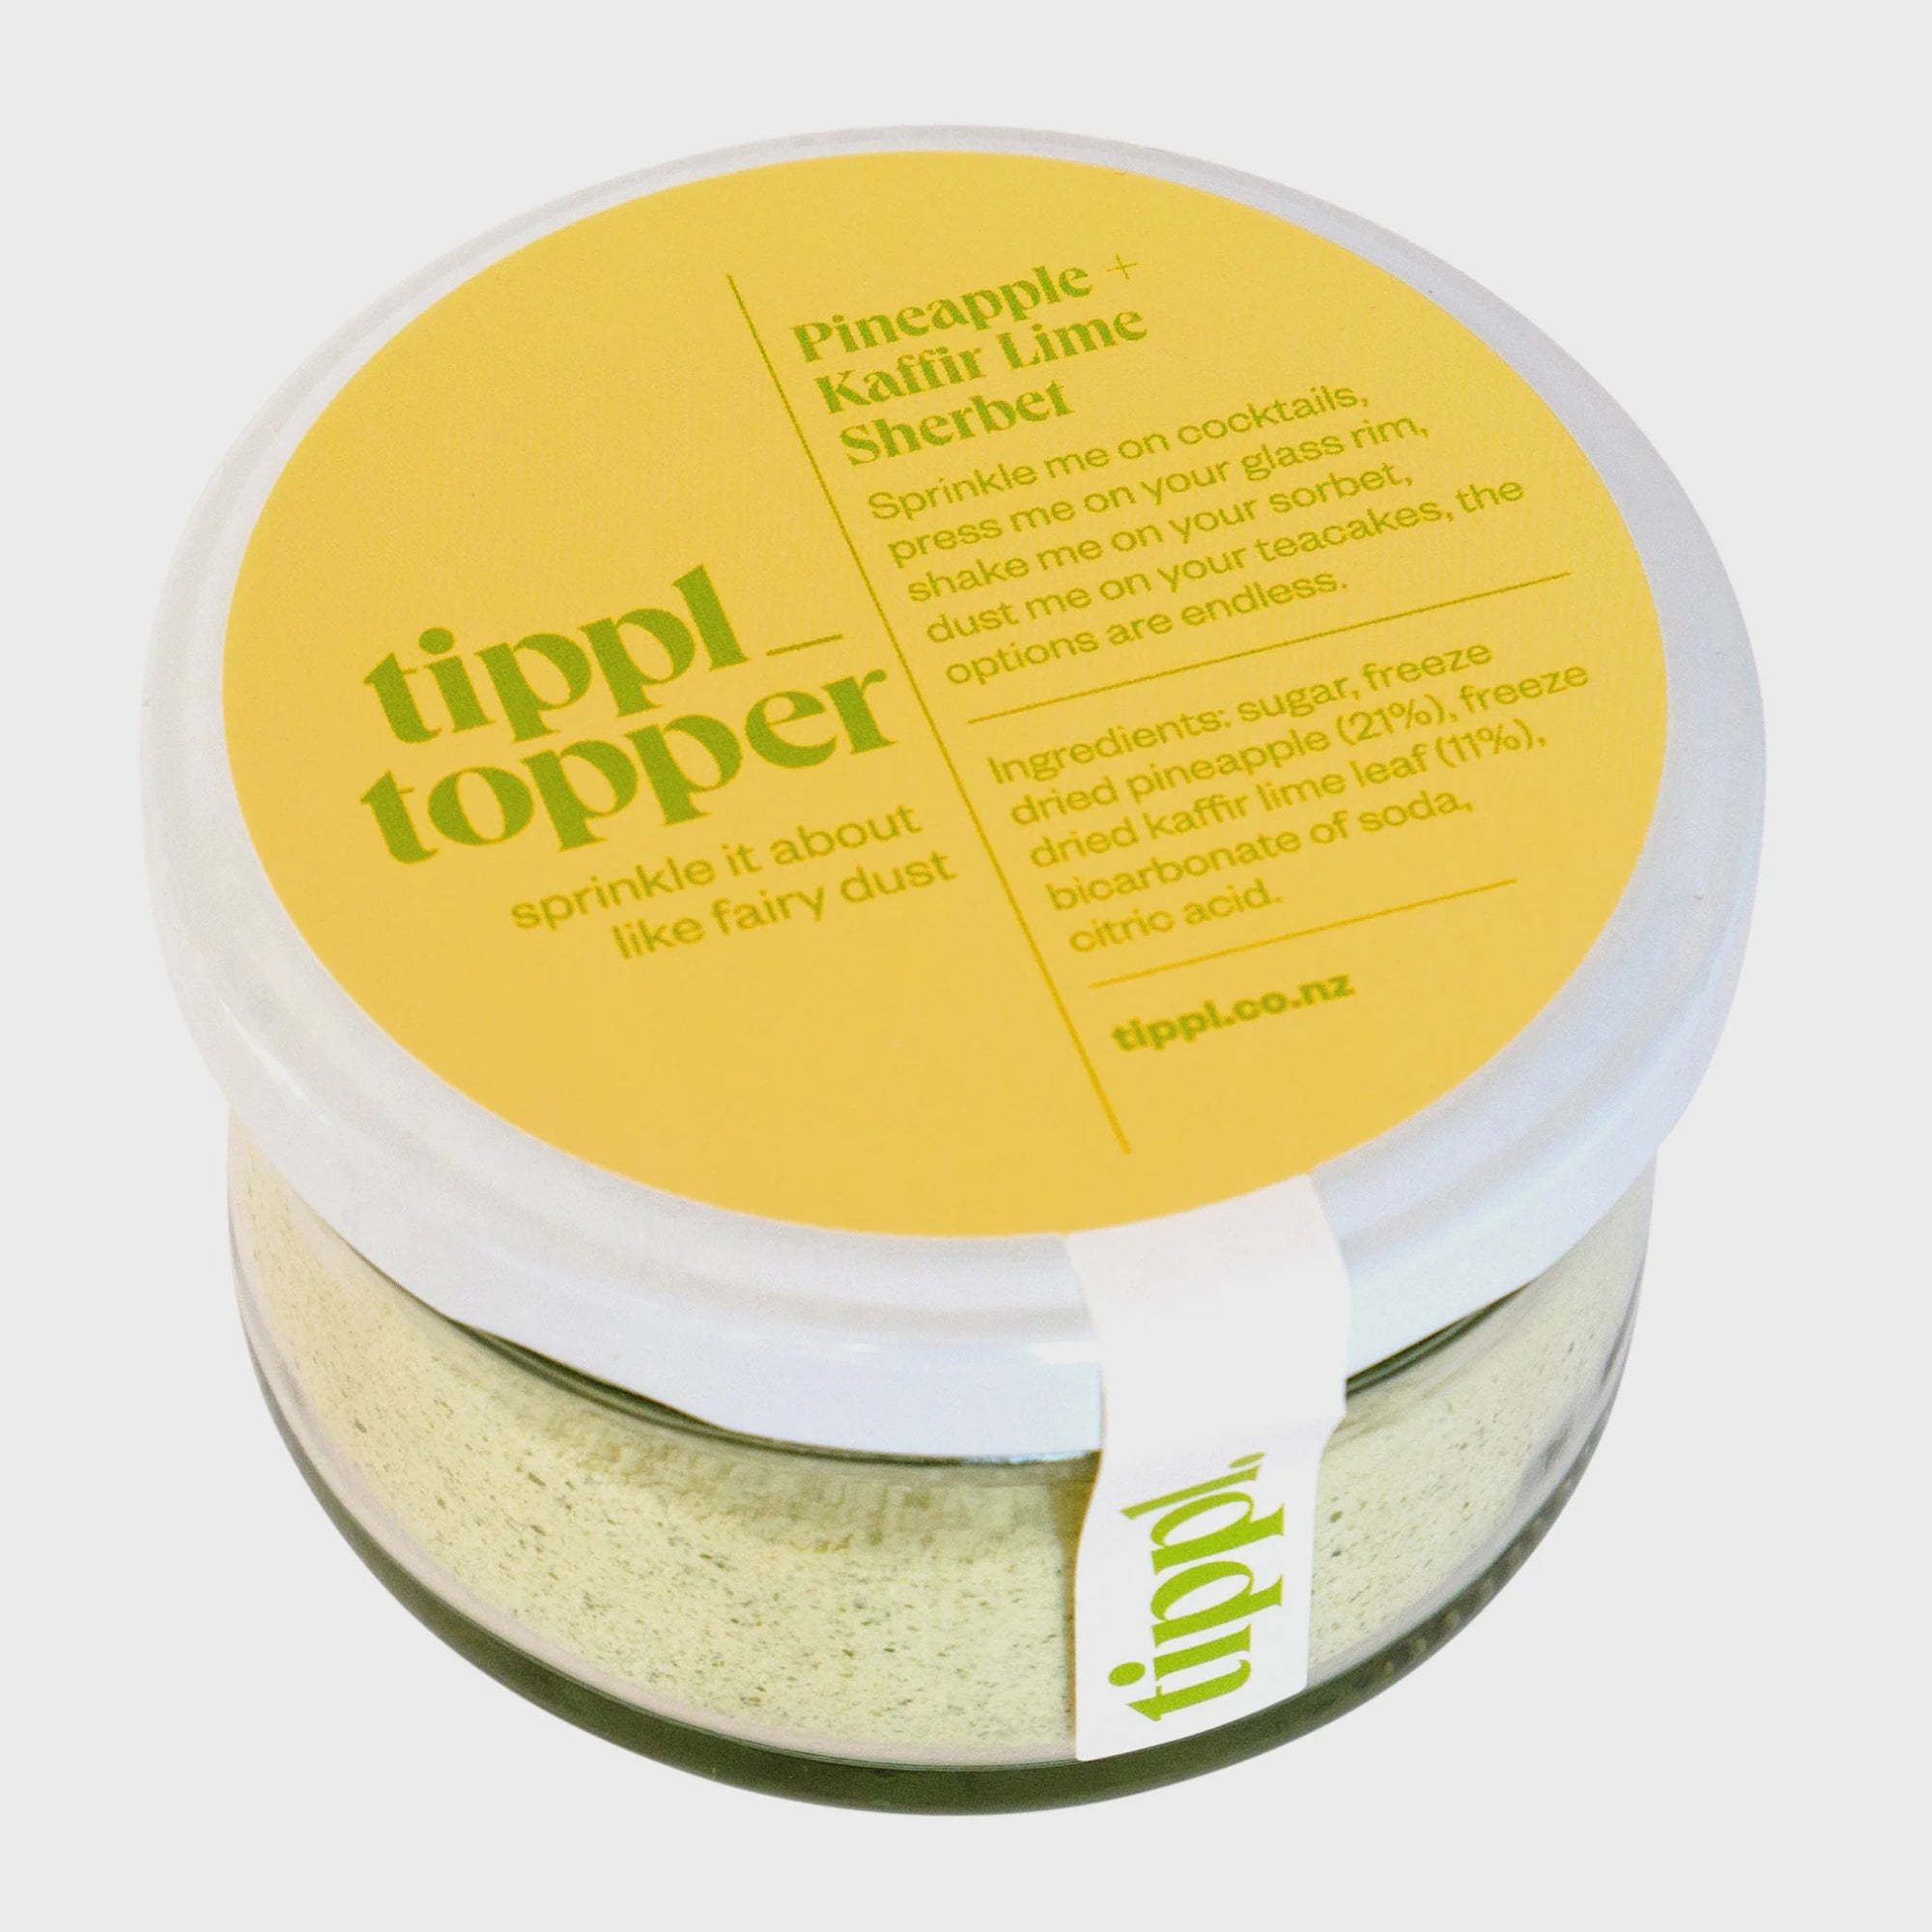 Tippl Topper - Pineapple & Kaffir Lime Sherbet - Urban Naturals